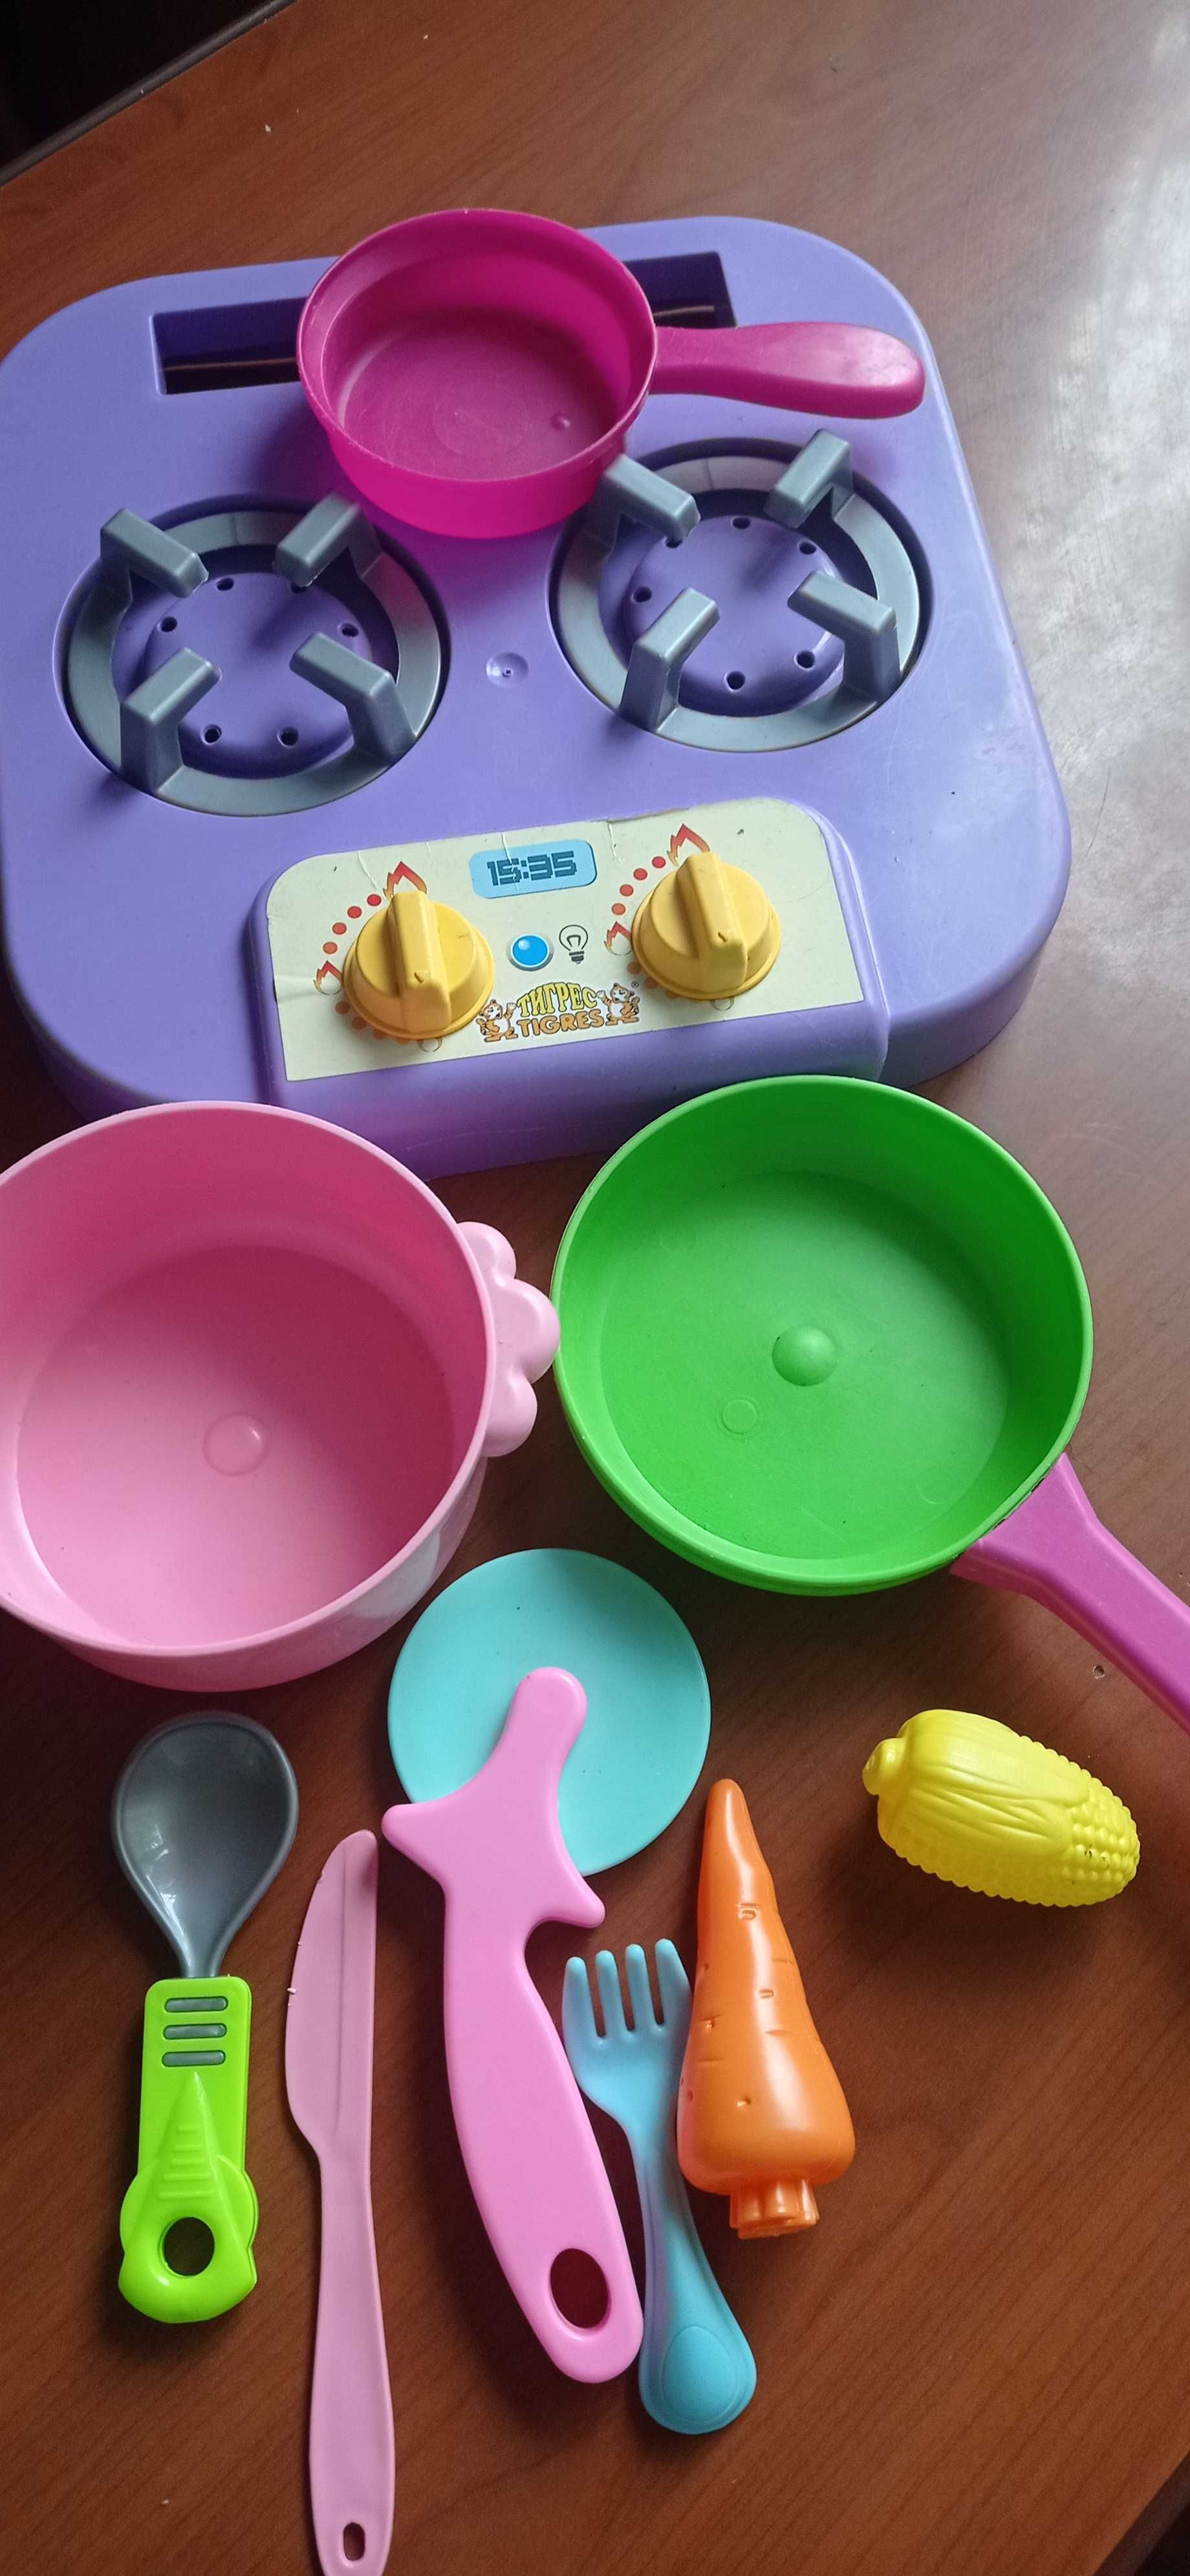 Плита , посуда - игрушки для девочки